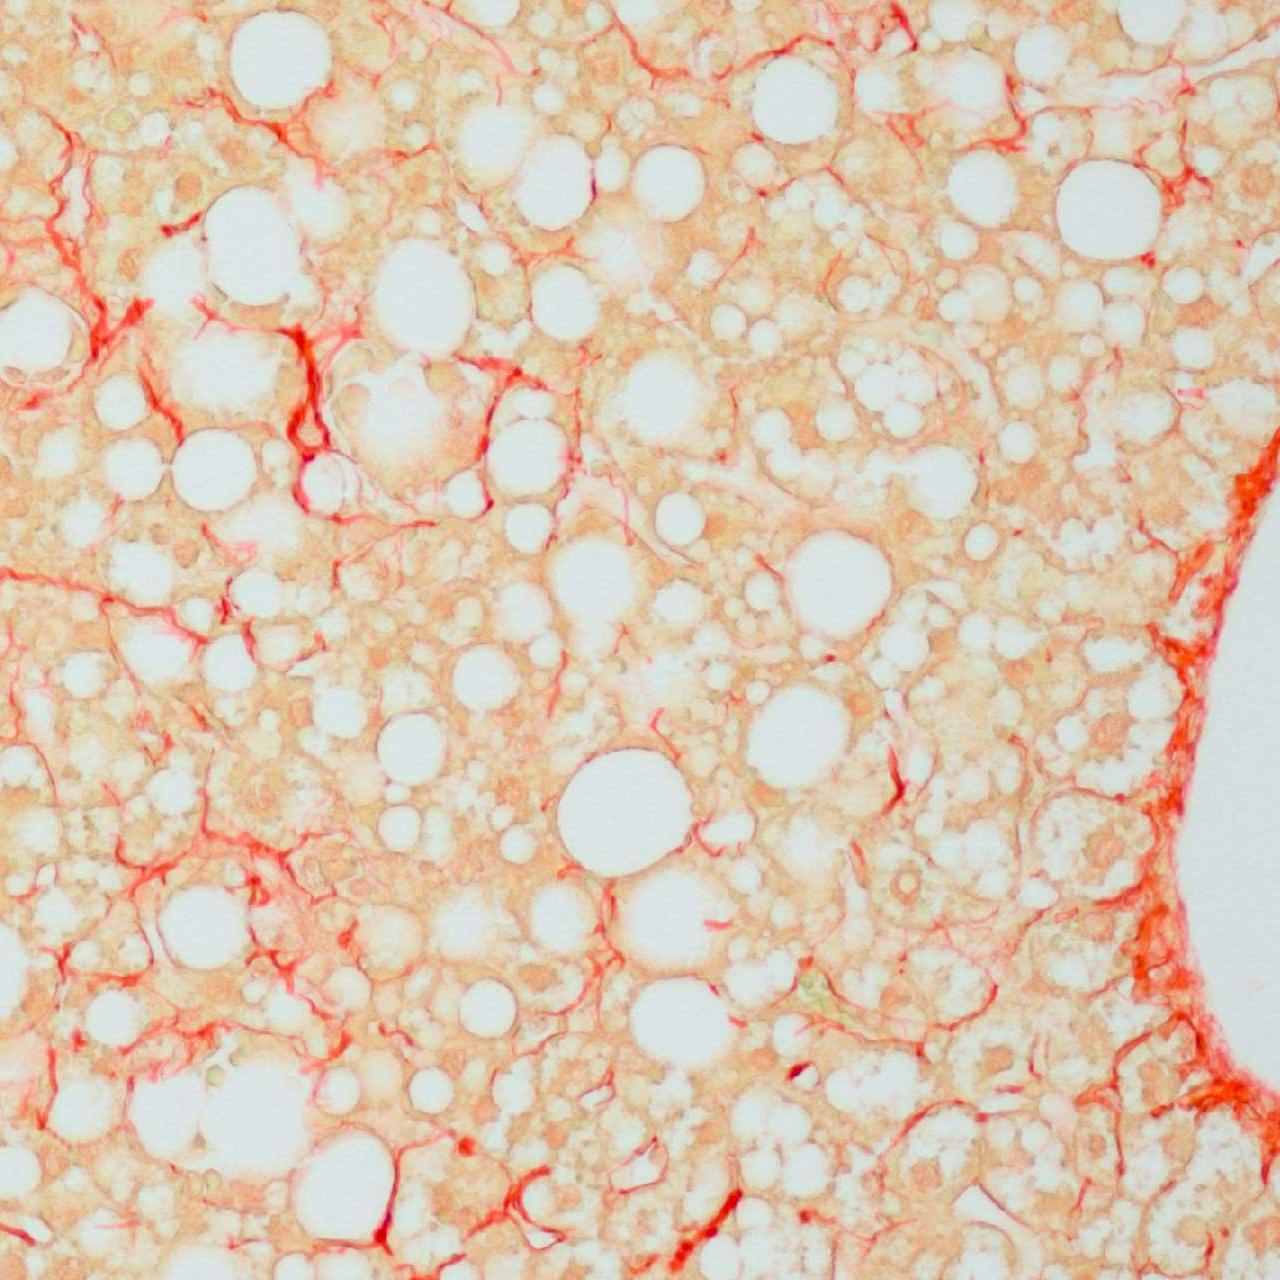 Hígado de ratón con tejido conectivo colagenoso